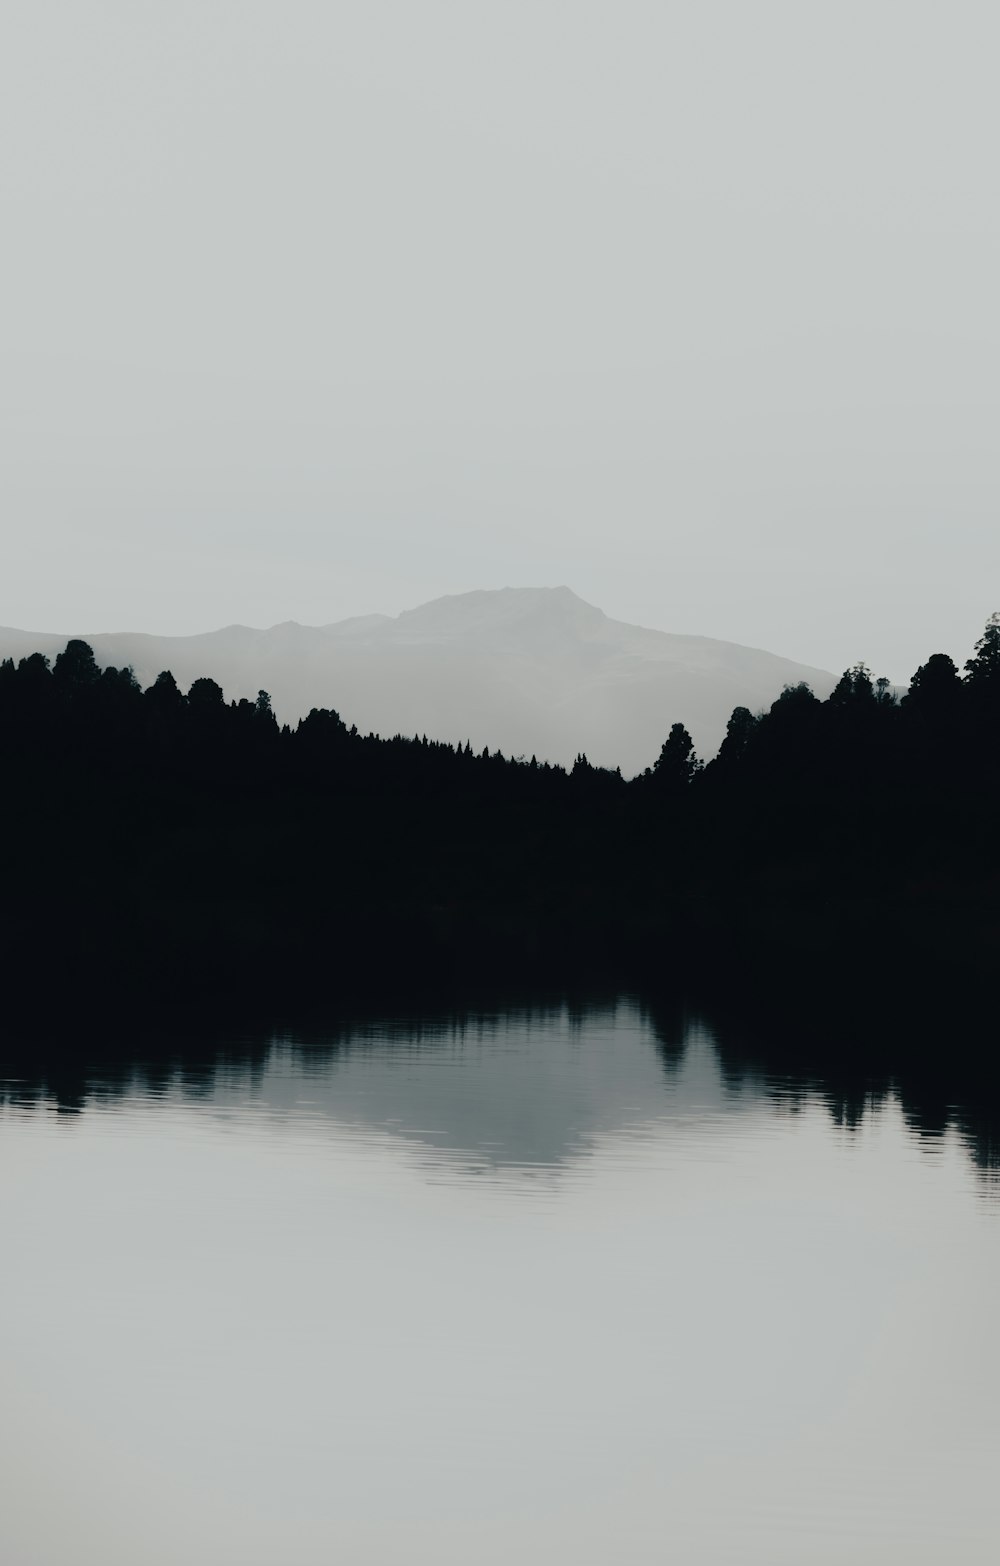 fotografia in scala di grigi dello specchio d'acqua che osserva la montagna